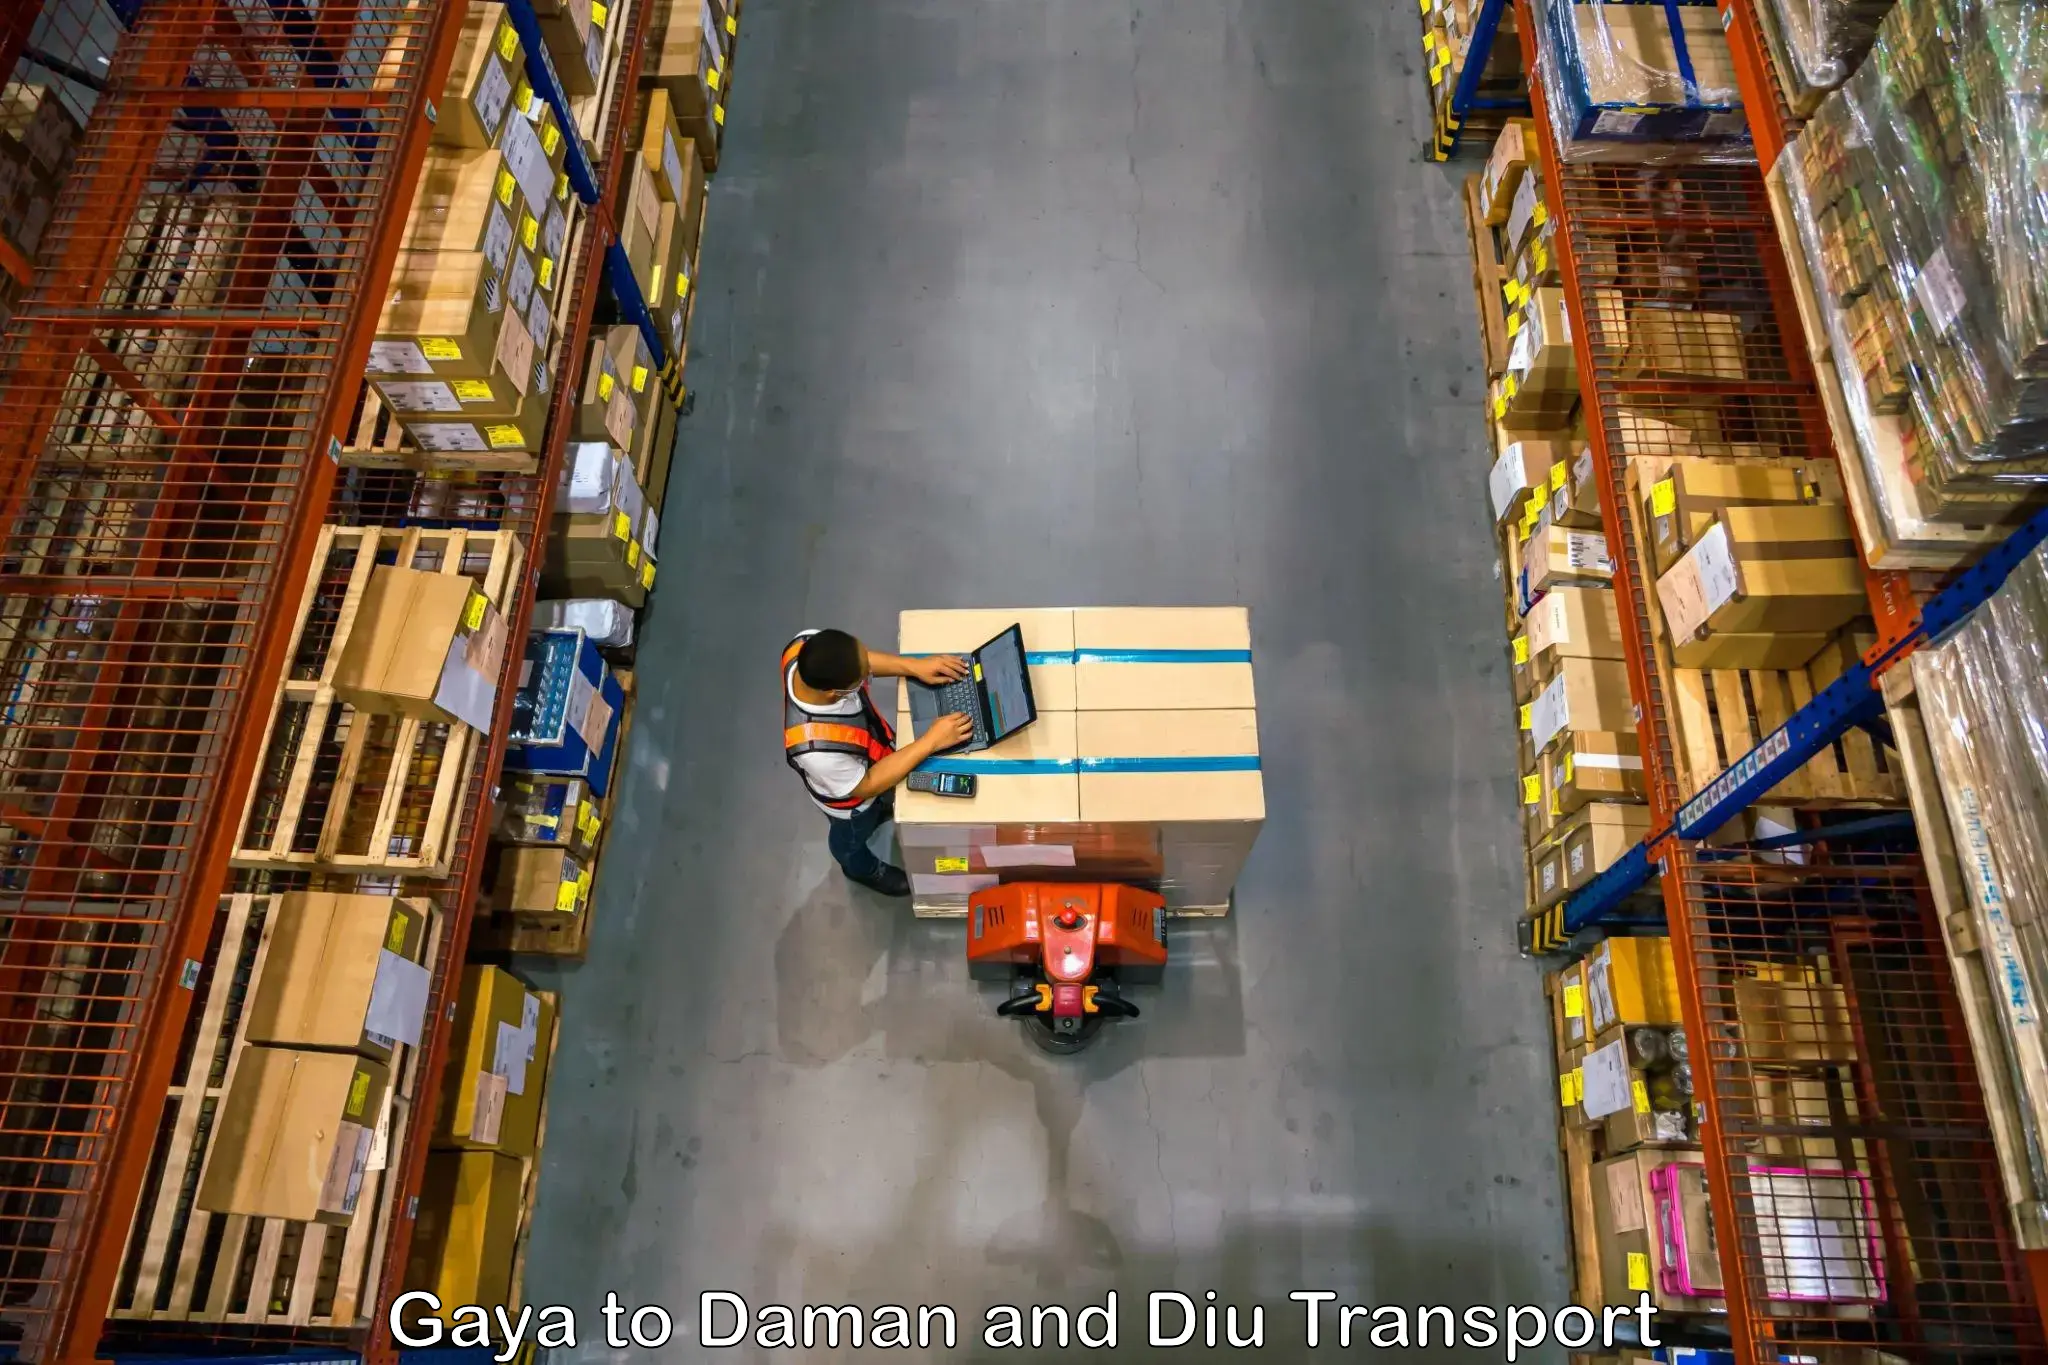 India truck logistics services Gaya to Daman